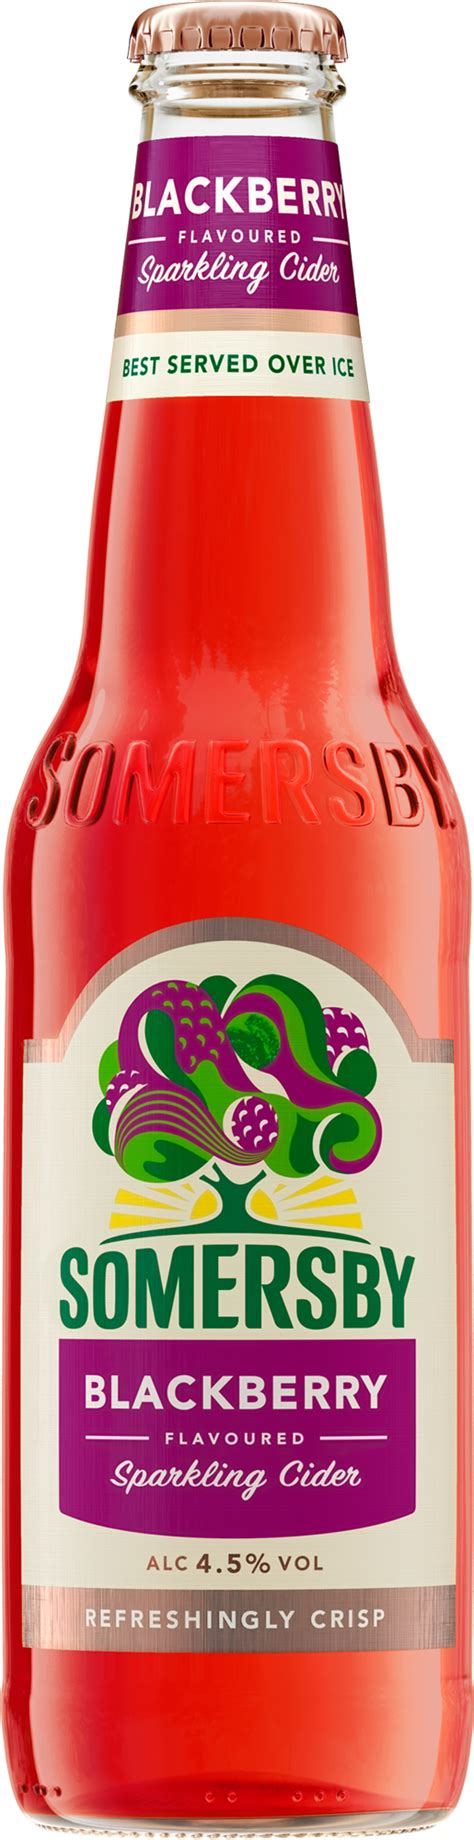 Somersby Blackberry Sparkling Cider 4 X 033 L Glas Mehrweg Ihr Zuverlässiger Lieferservice